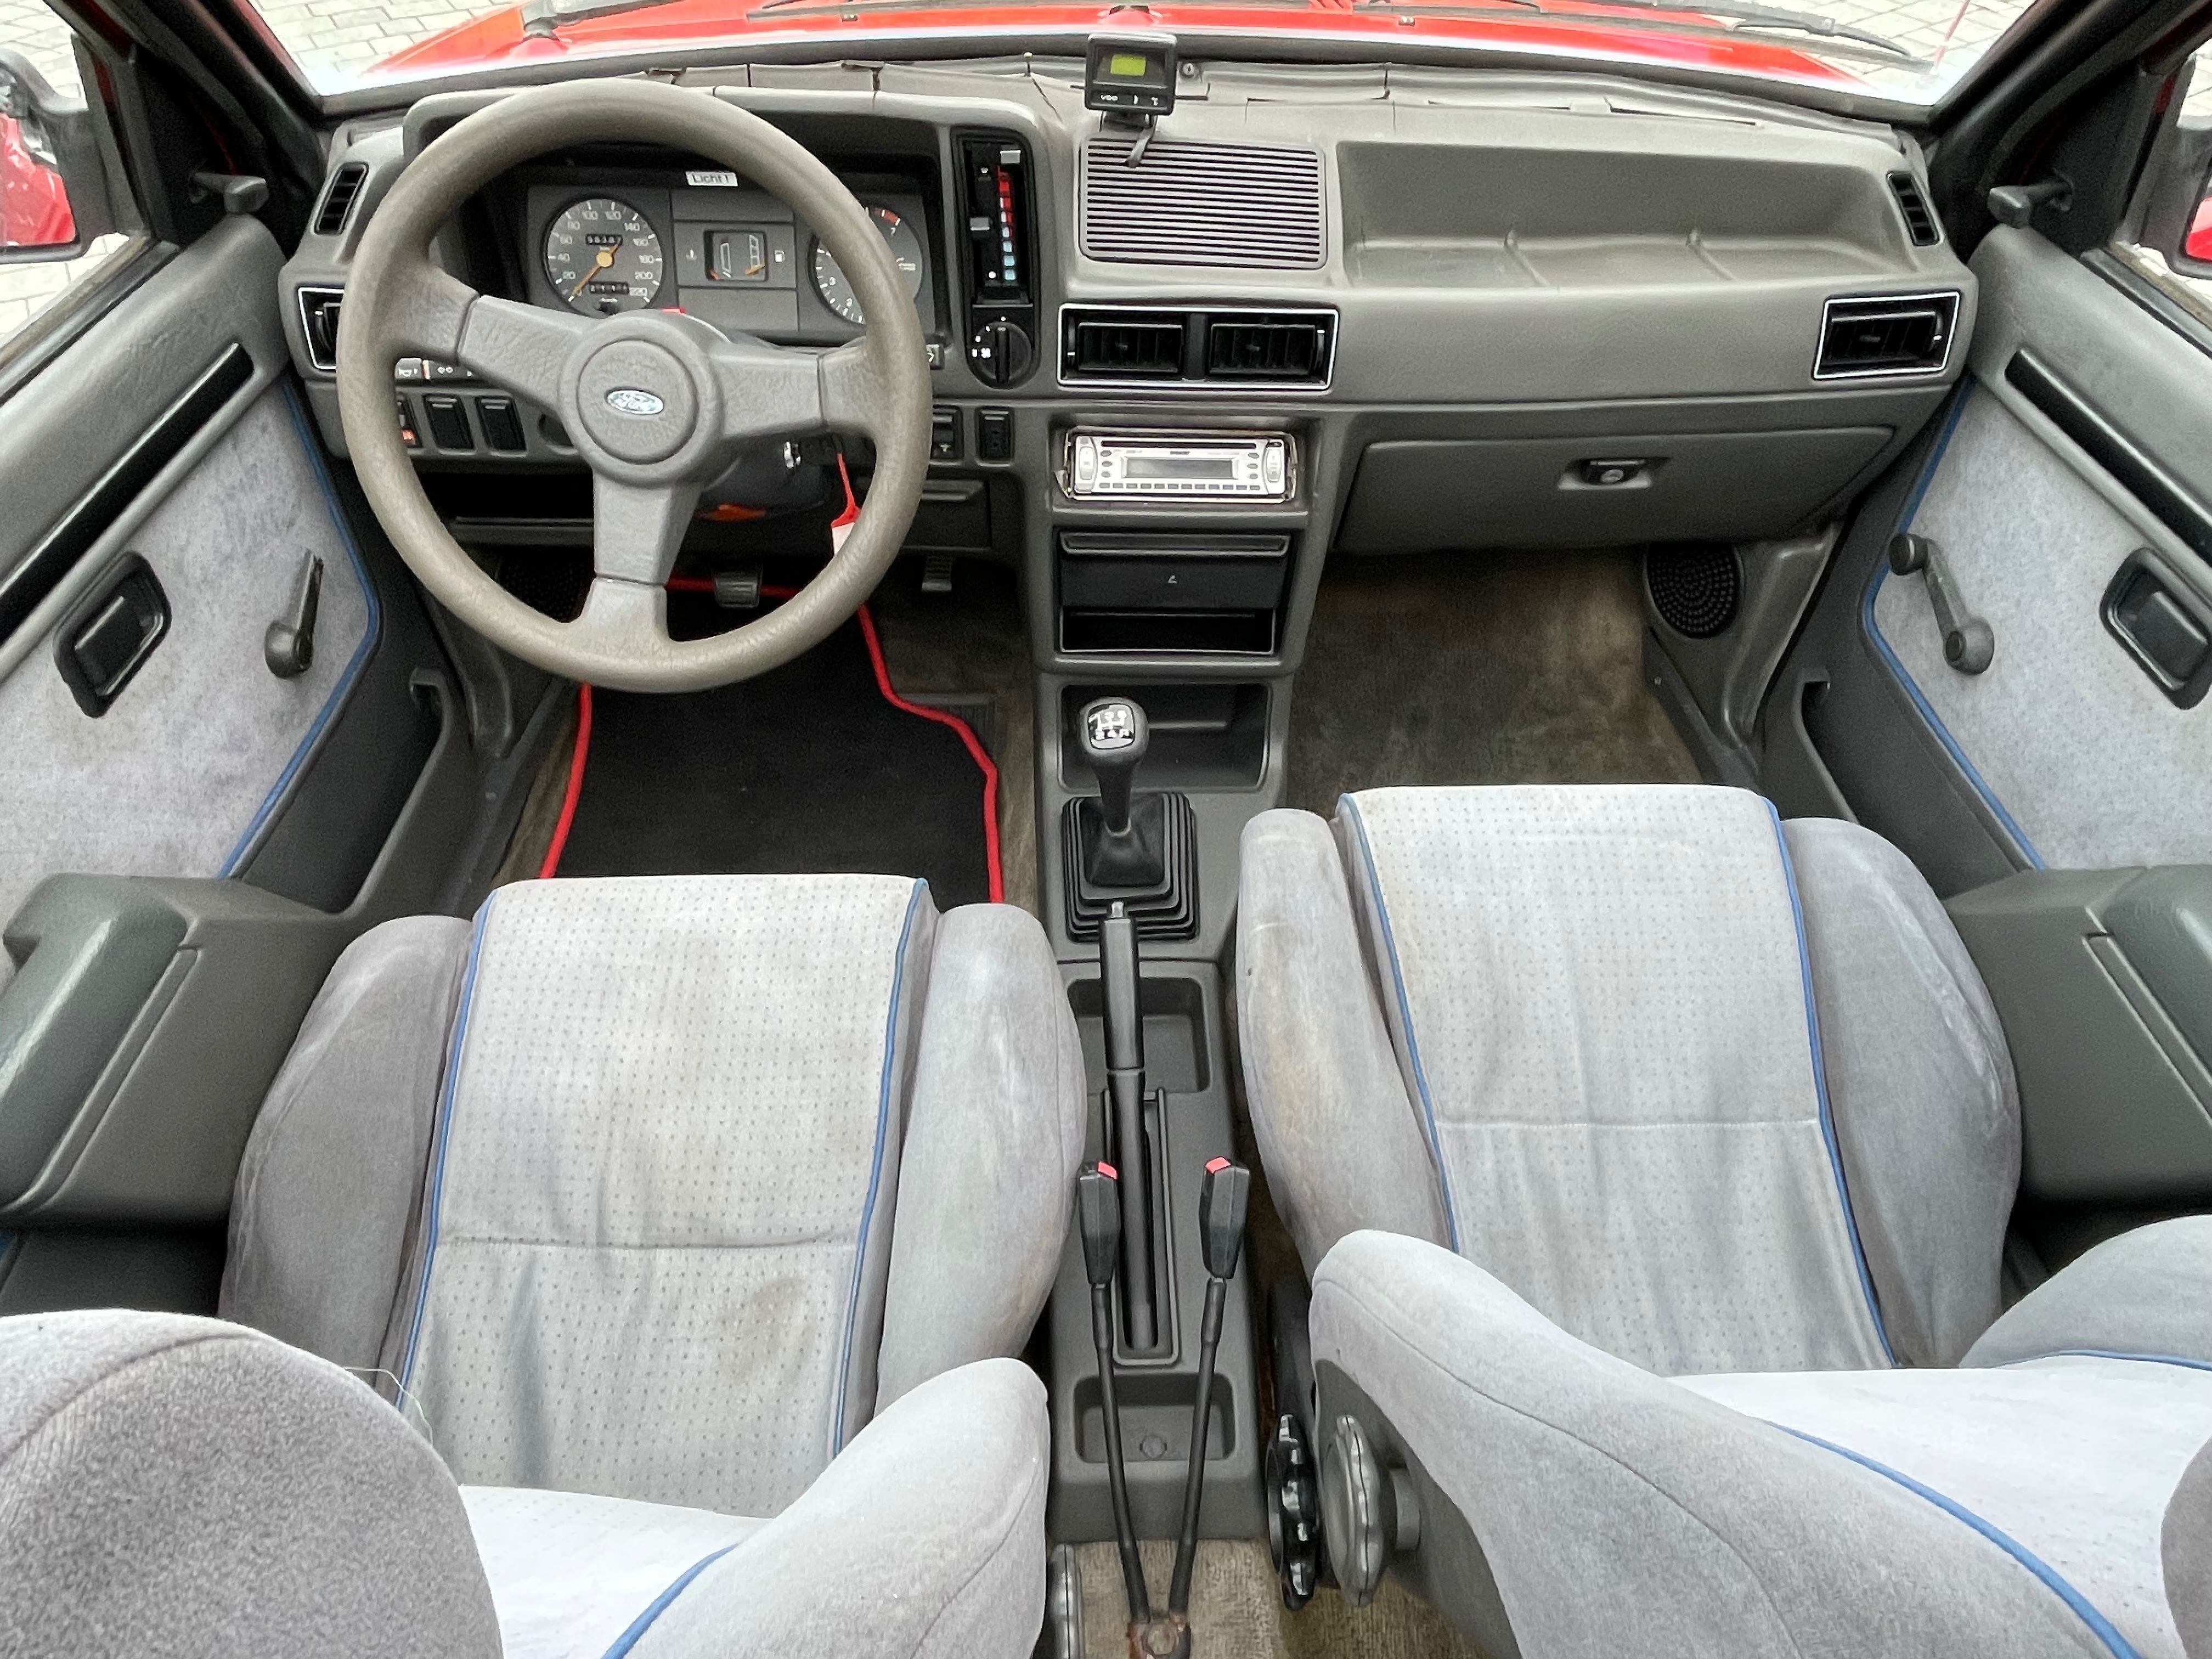 Sprzedam Forda Escorta Cabrio XR3i Mk3 z 1985r 1.6 benzyna na zabytek